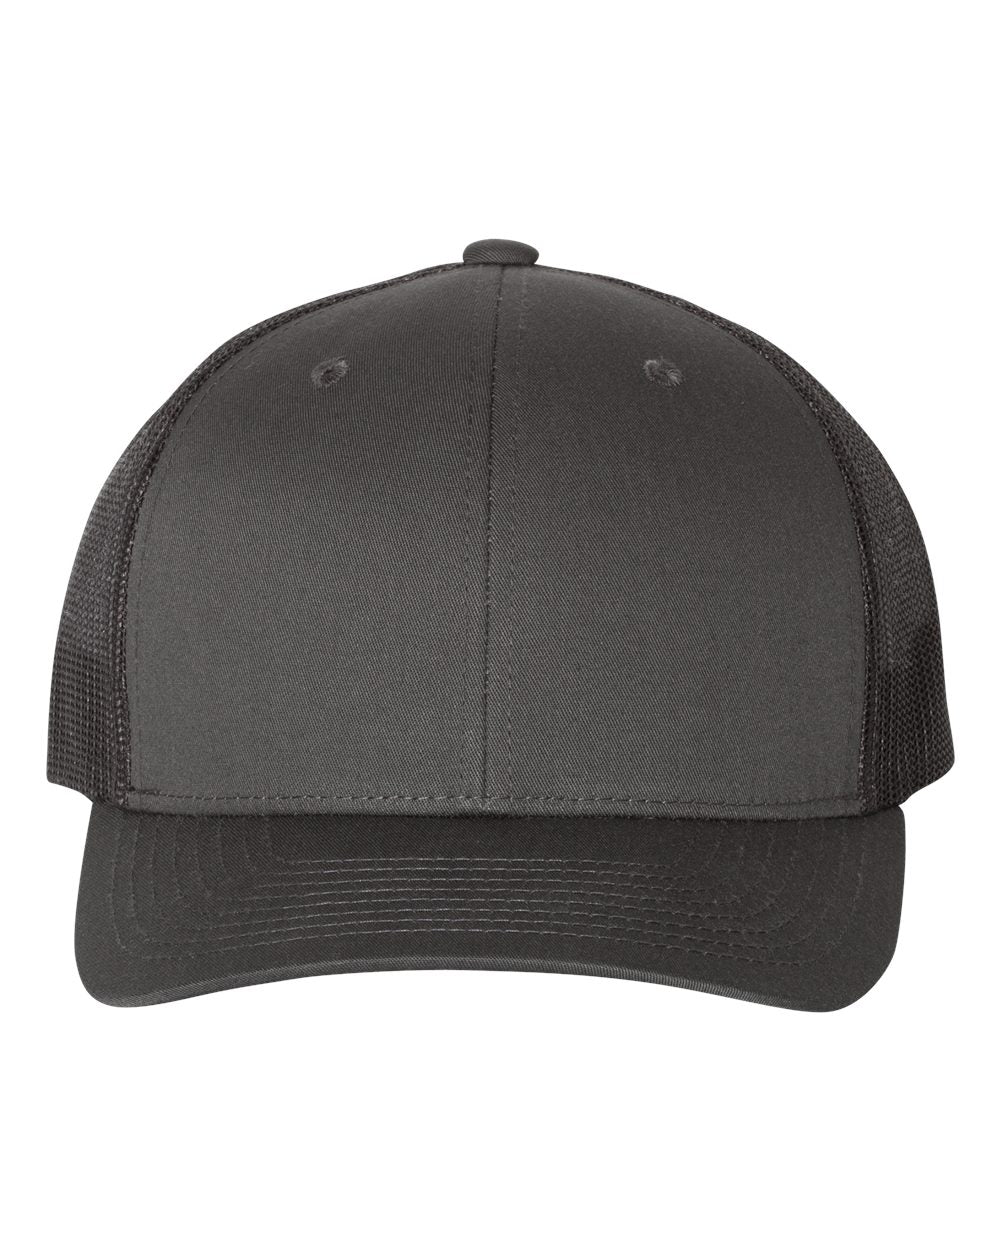 Custom adjustable baseball hat